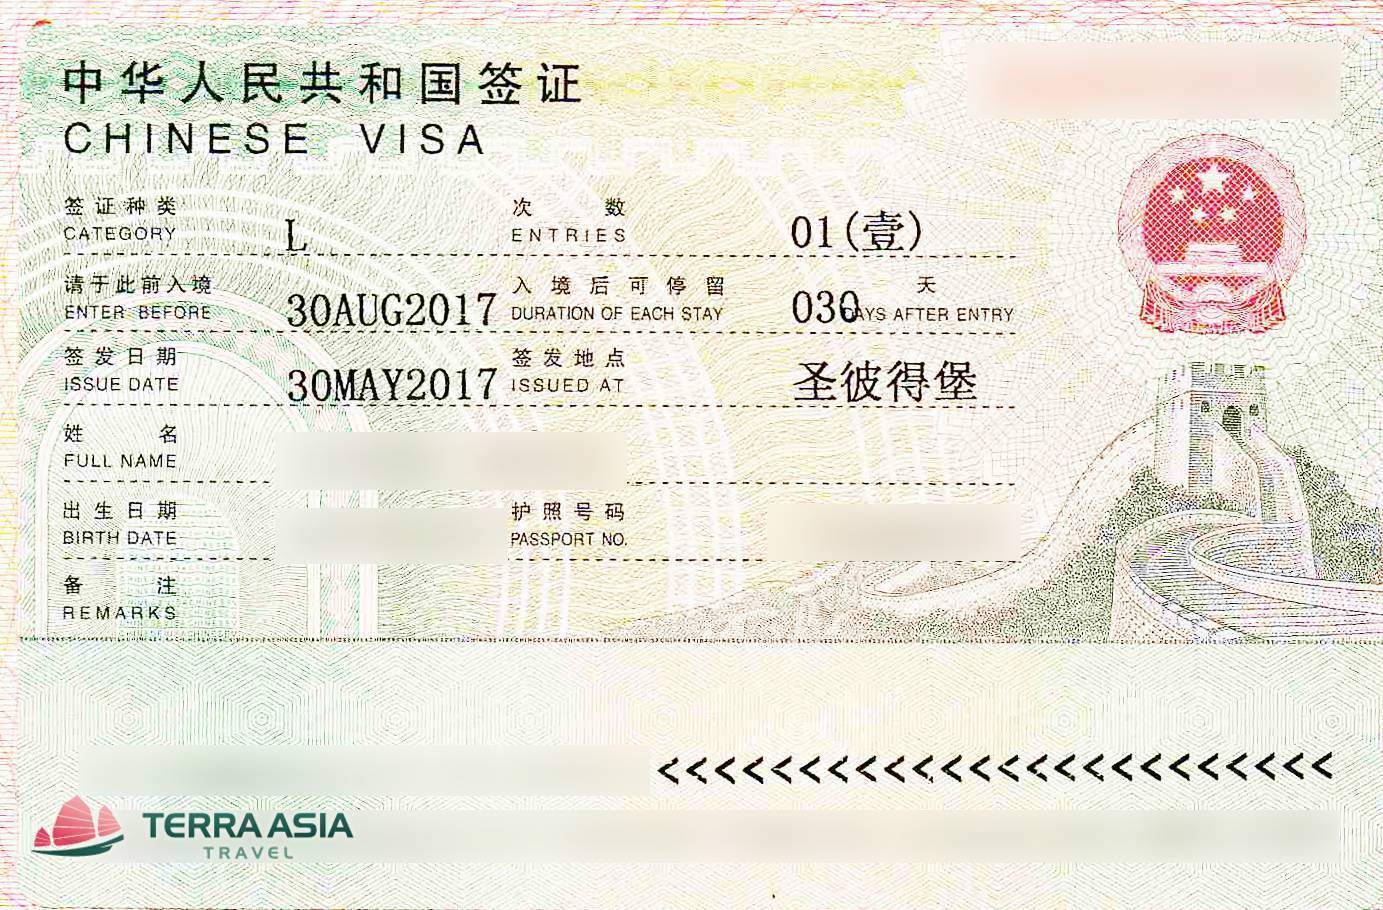 Оформление визы в китай для россиян в 2021 году: список документов, стоимость